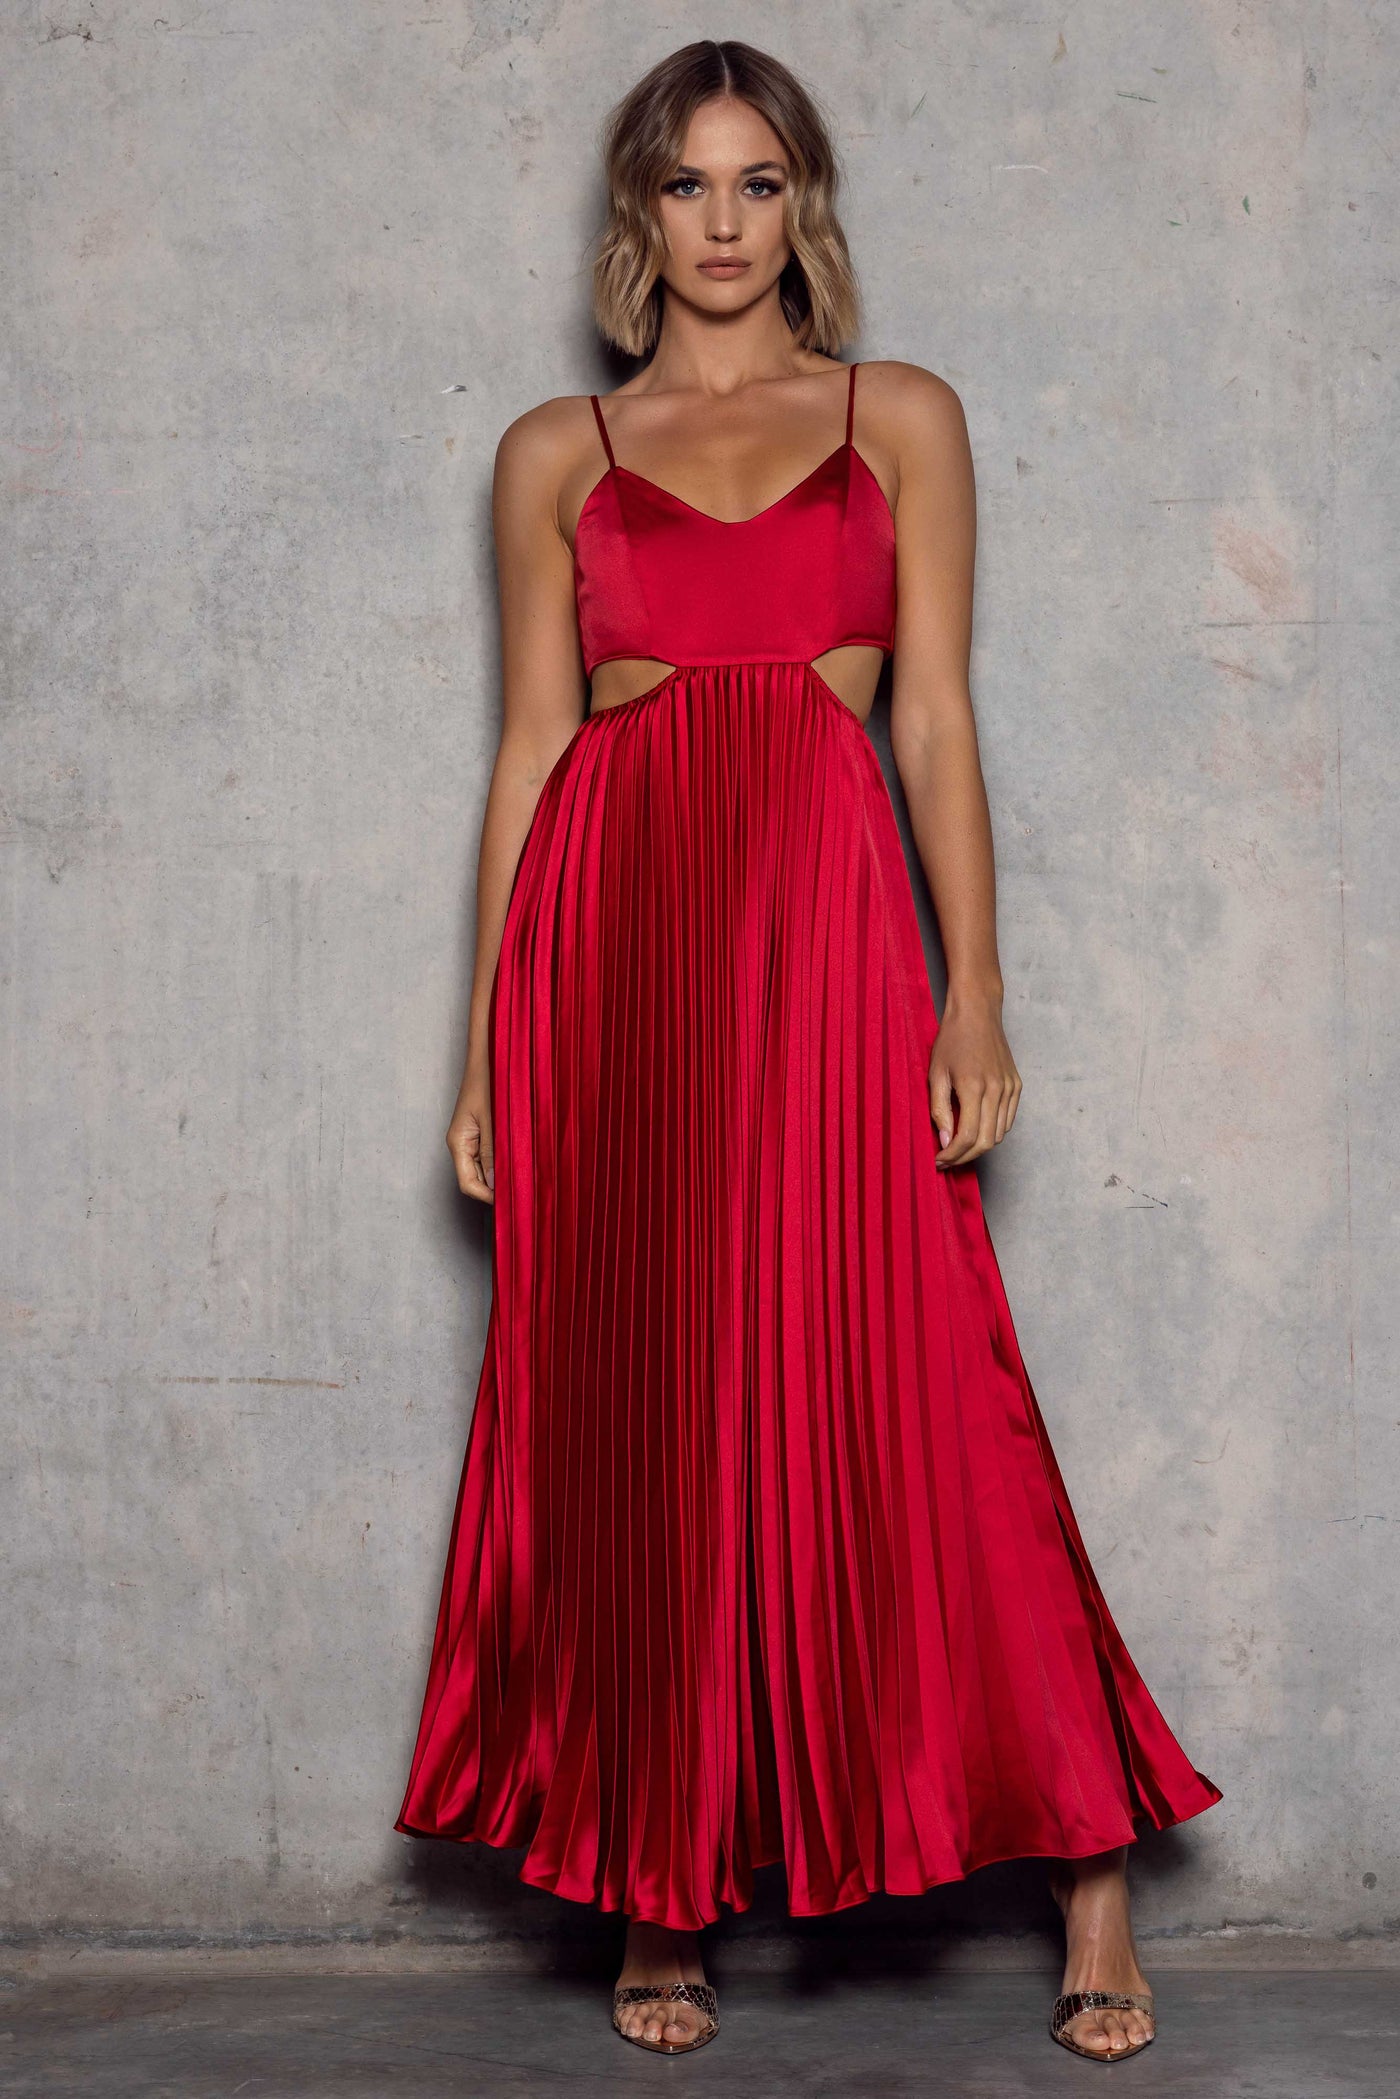 Millie Dress in Red by Elle Zeitoune - RENTAL